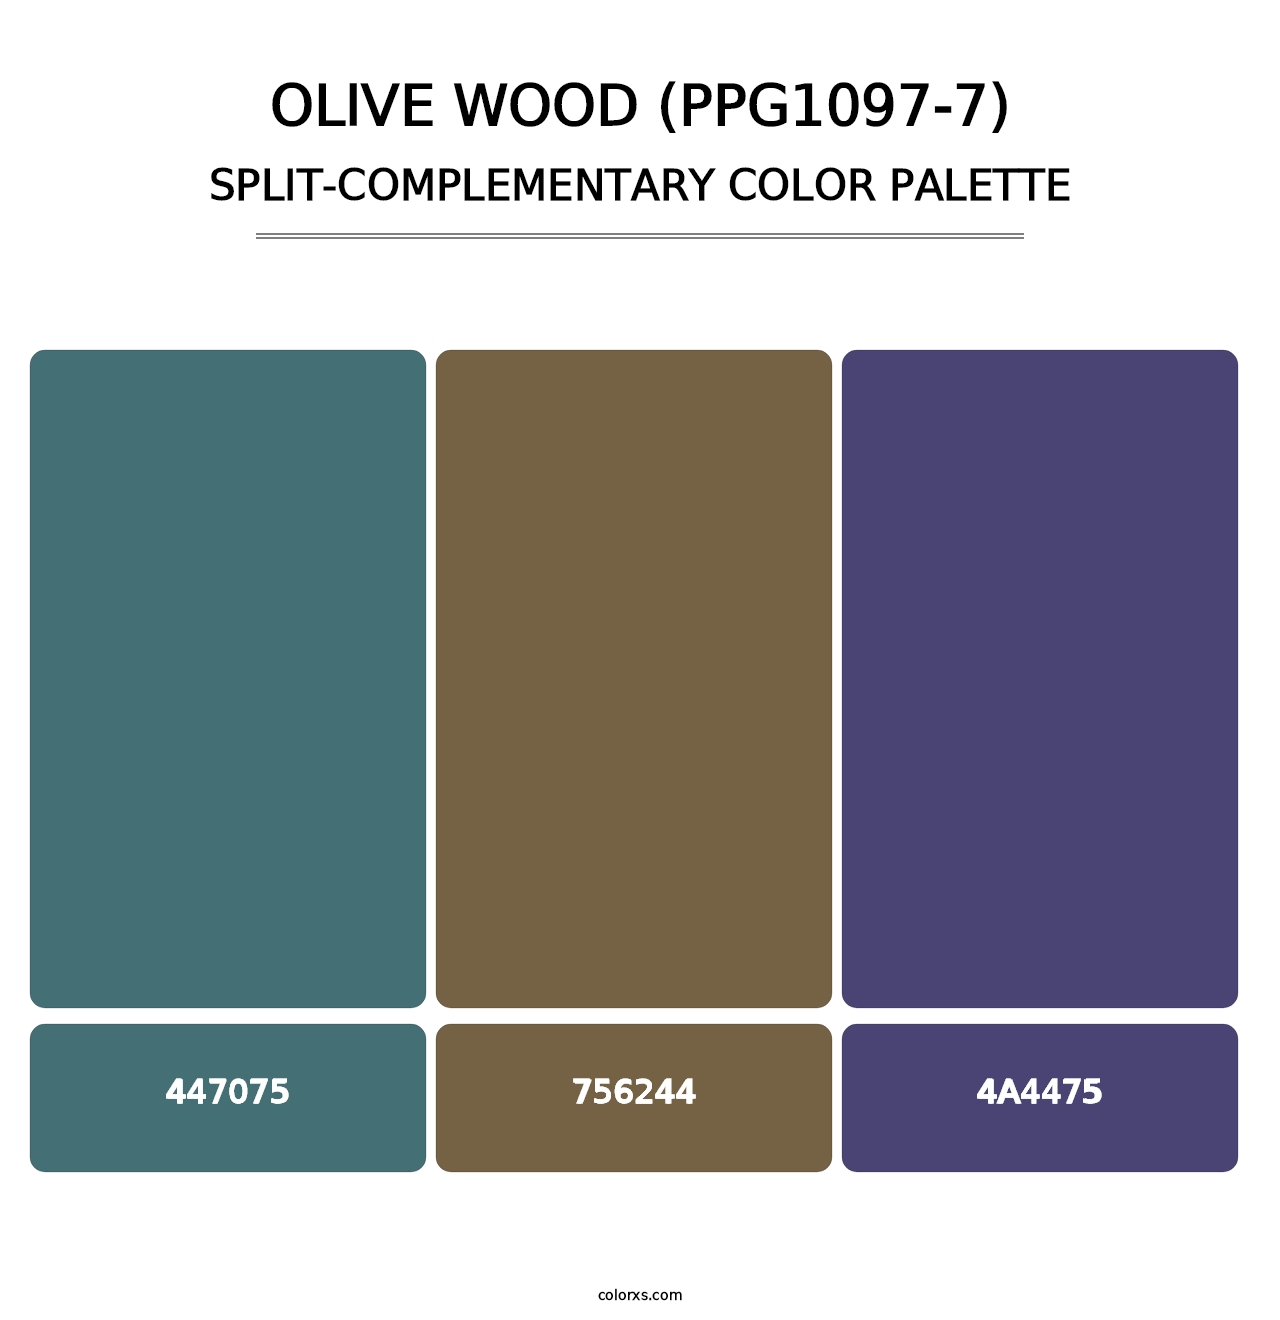 Olive Wood (PPG1097-7) - Split-Complementary Color Palette